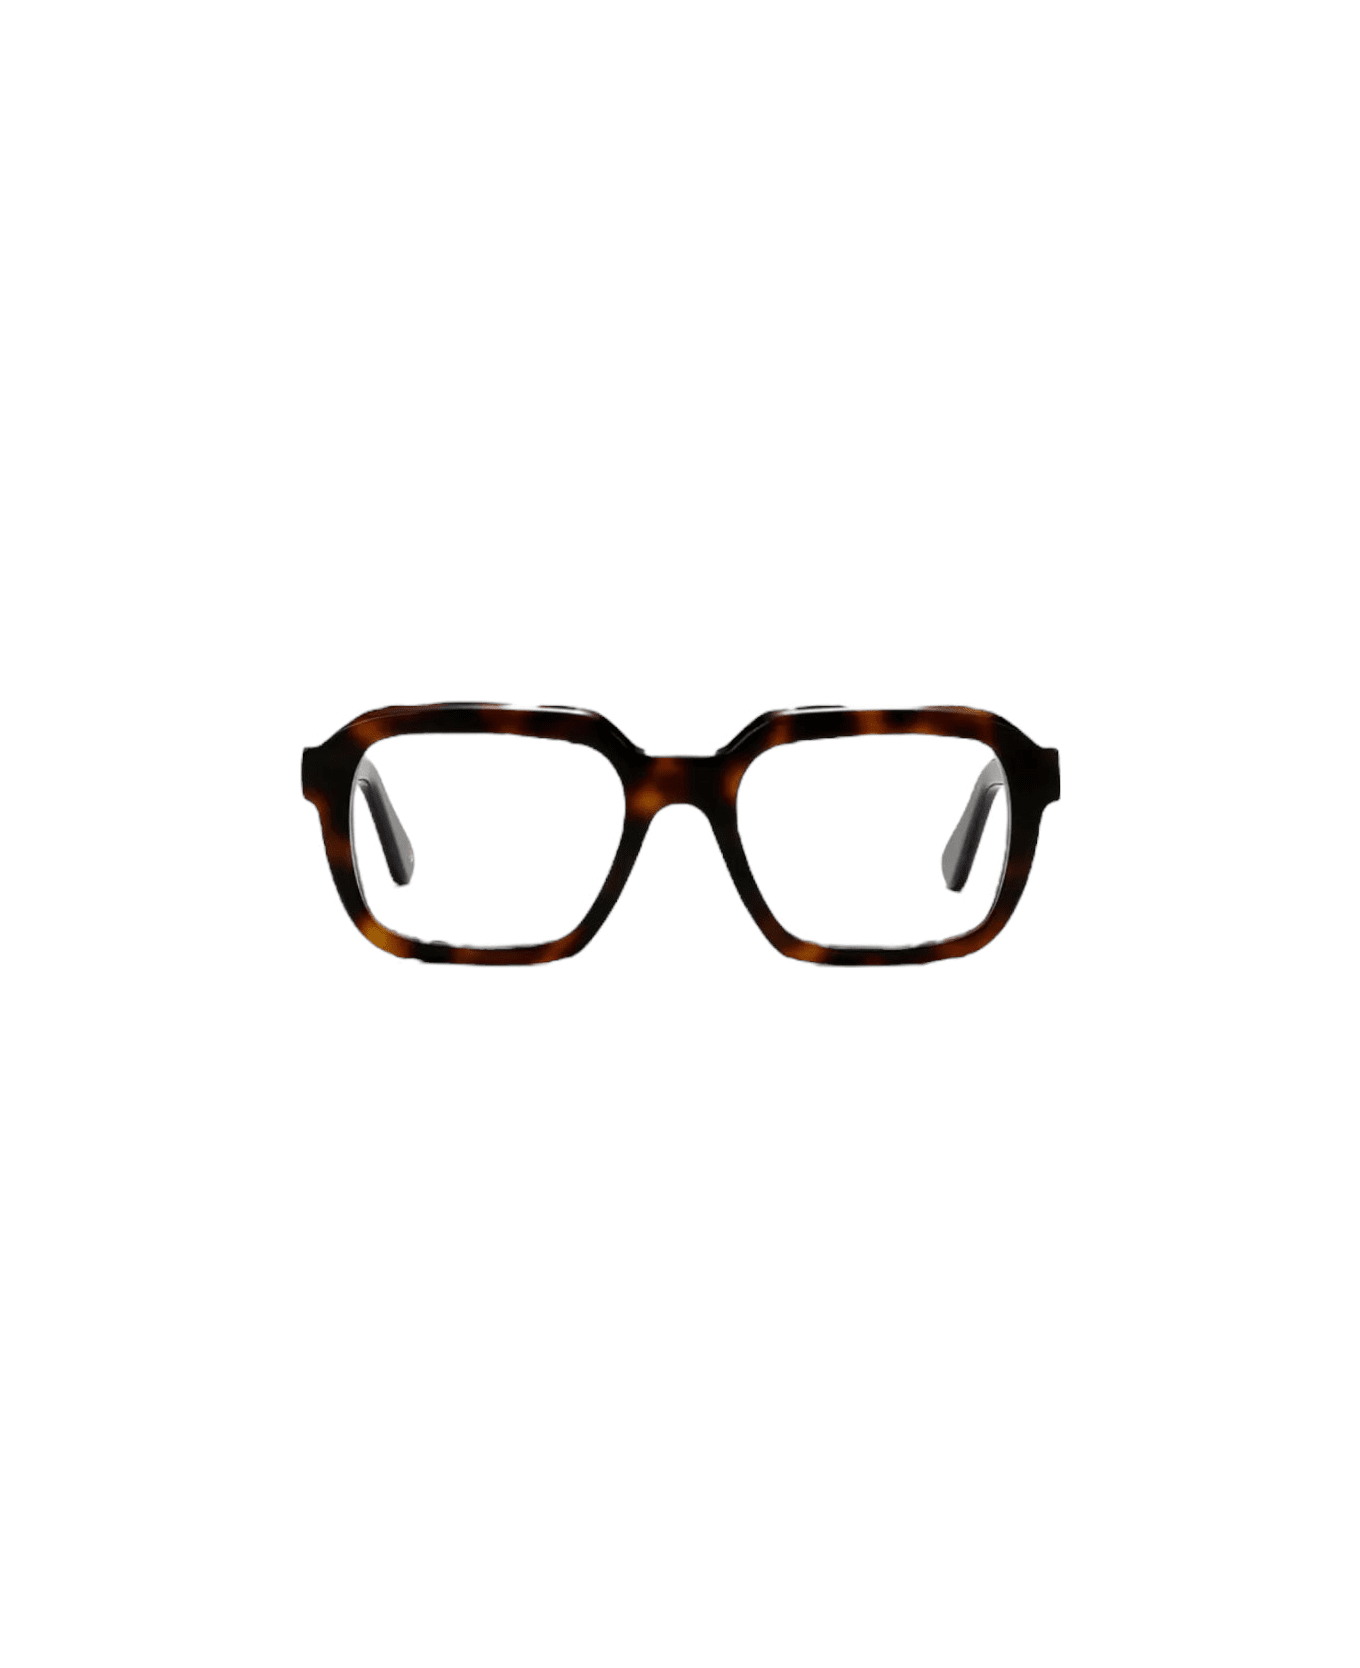 L.G.R. Raffaello - Black Glasses アイウェア